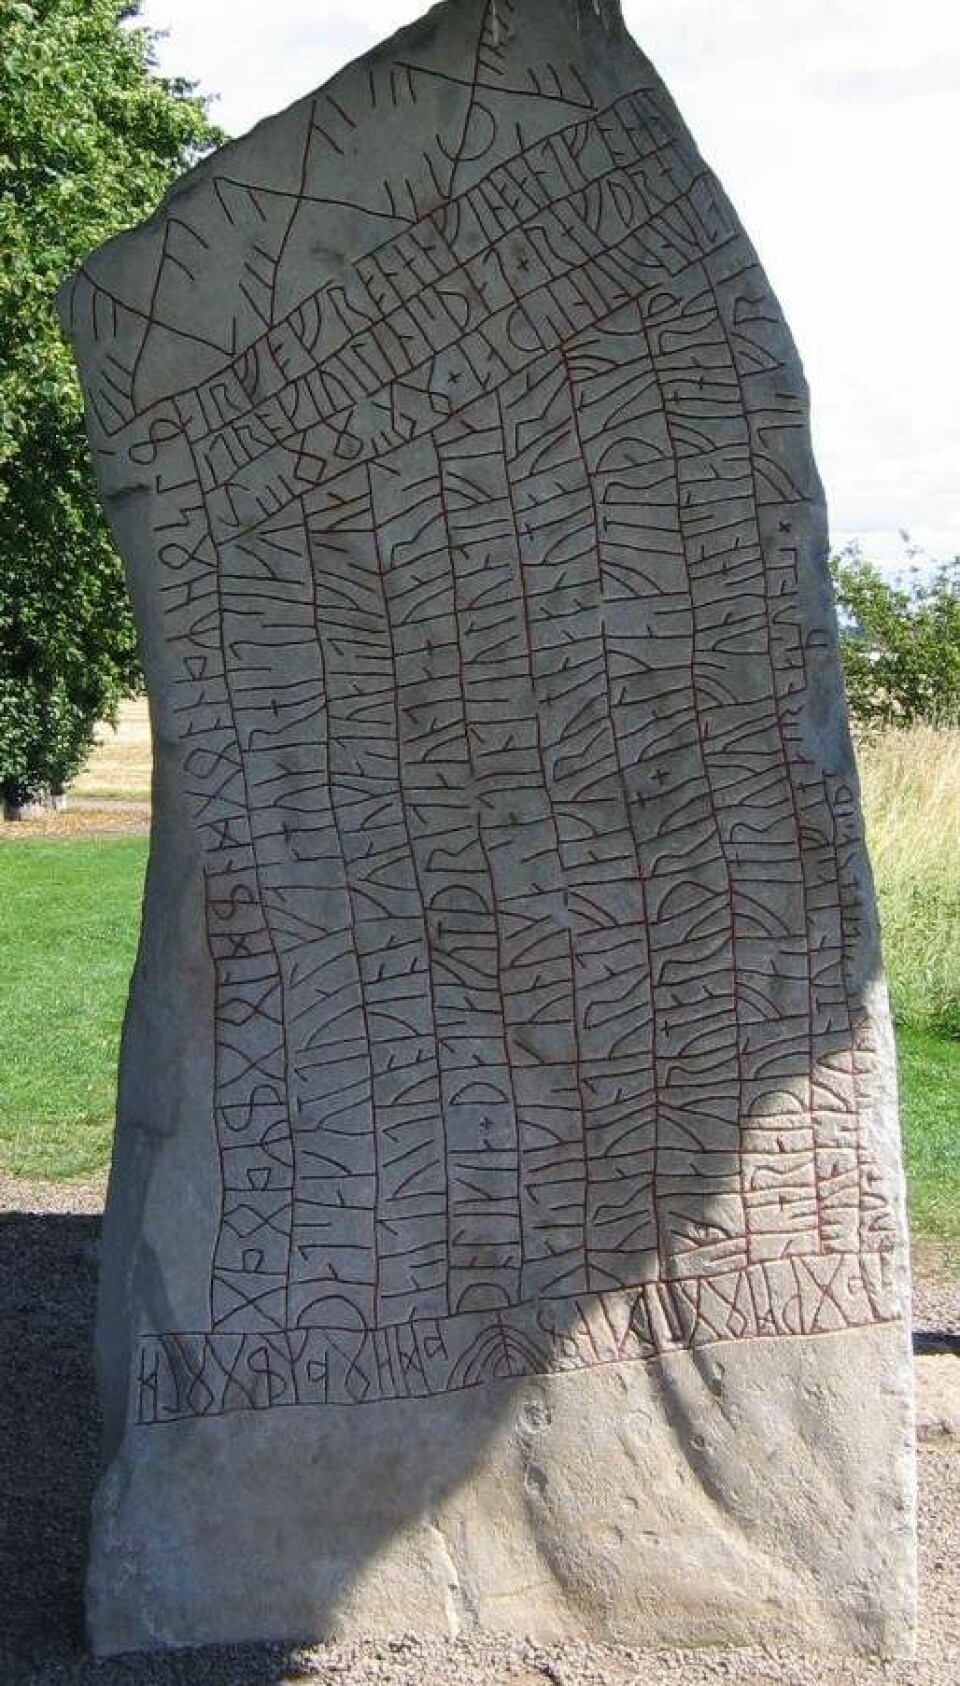 Röksteinens andre side. Det er også runer på toppen og på kortsidene av steinen. (Foto: Wiglaf/CC BY-SA 3.0)